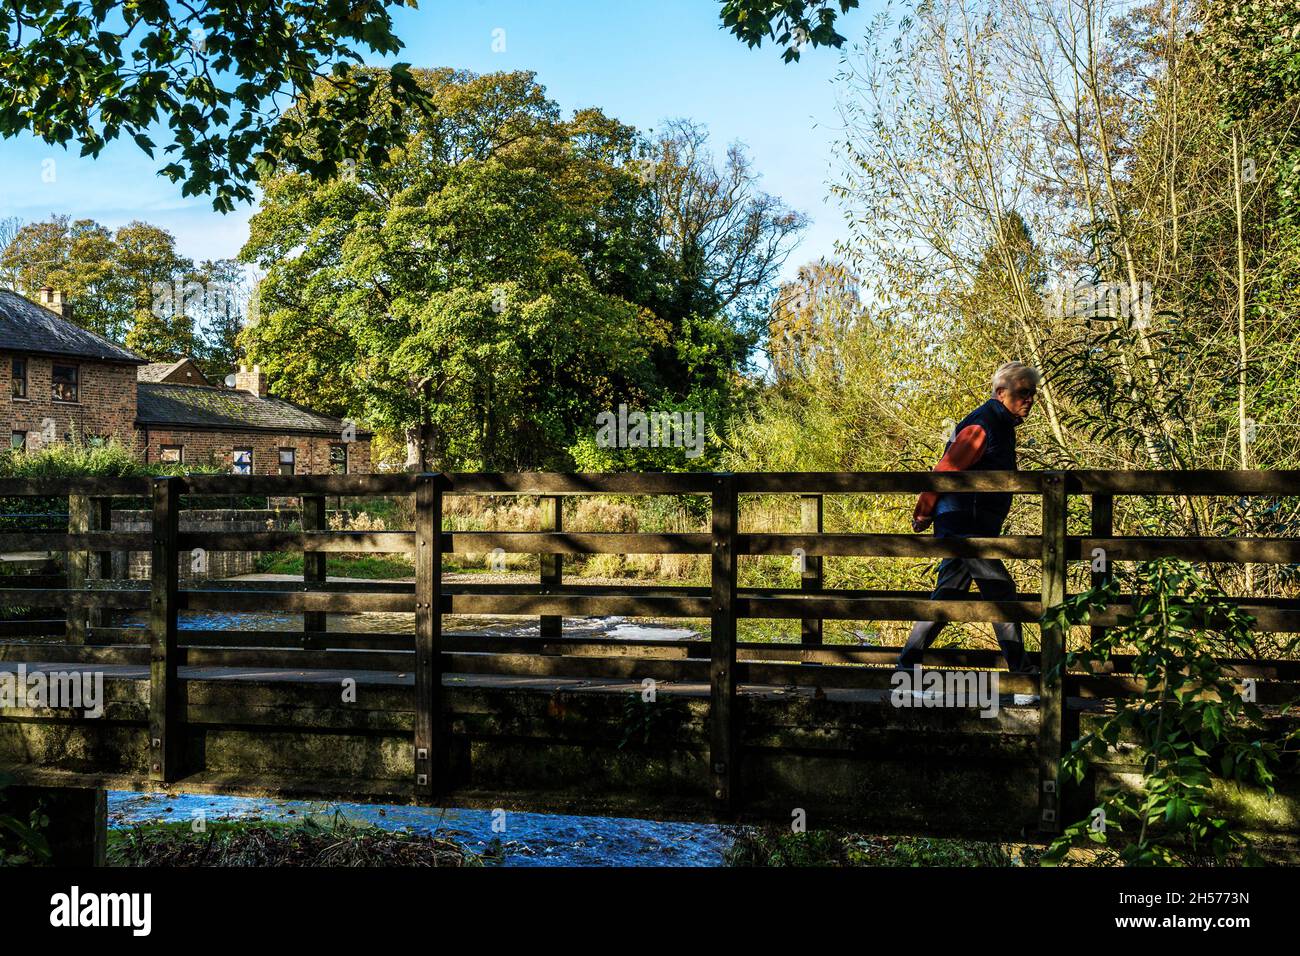 Puente peatonal de madera a través del río Skell con un hombre caminando a través de él con árboles de colores en el fondo en un día de otoño, Ripon, Inglaterra, Reino Unido. Foto de stock